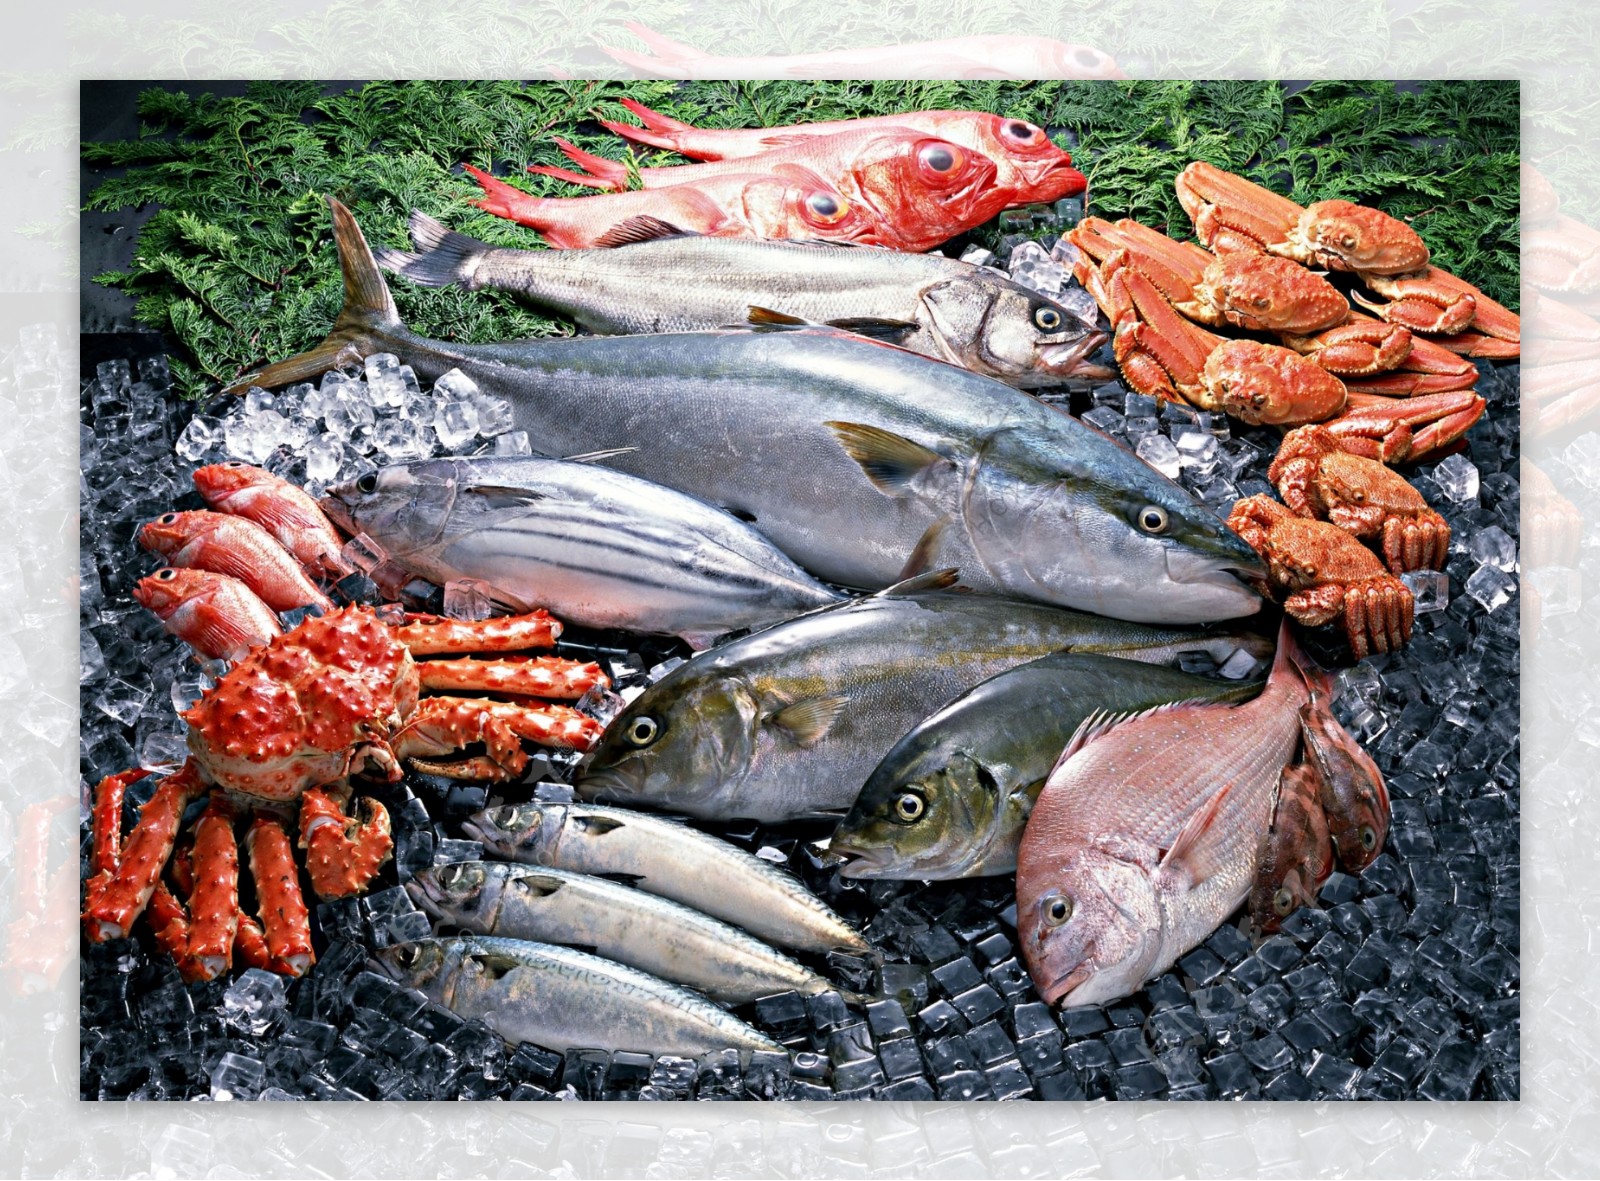 海鲜水产品分层图图片